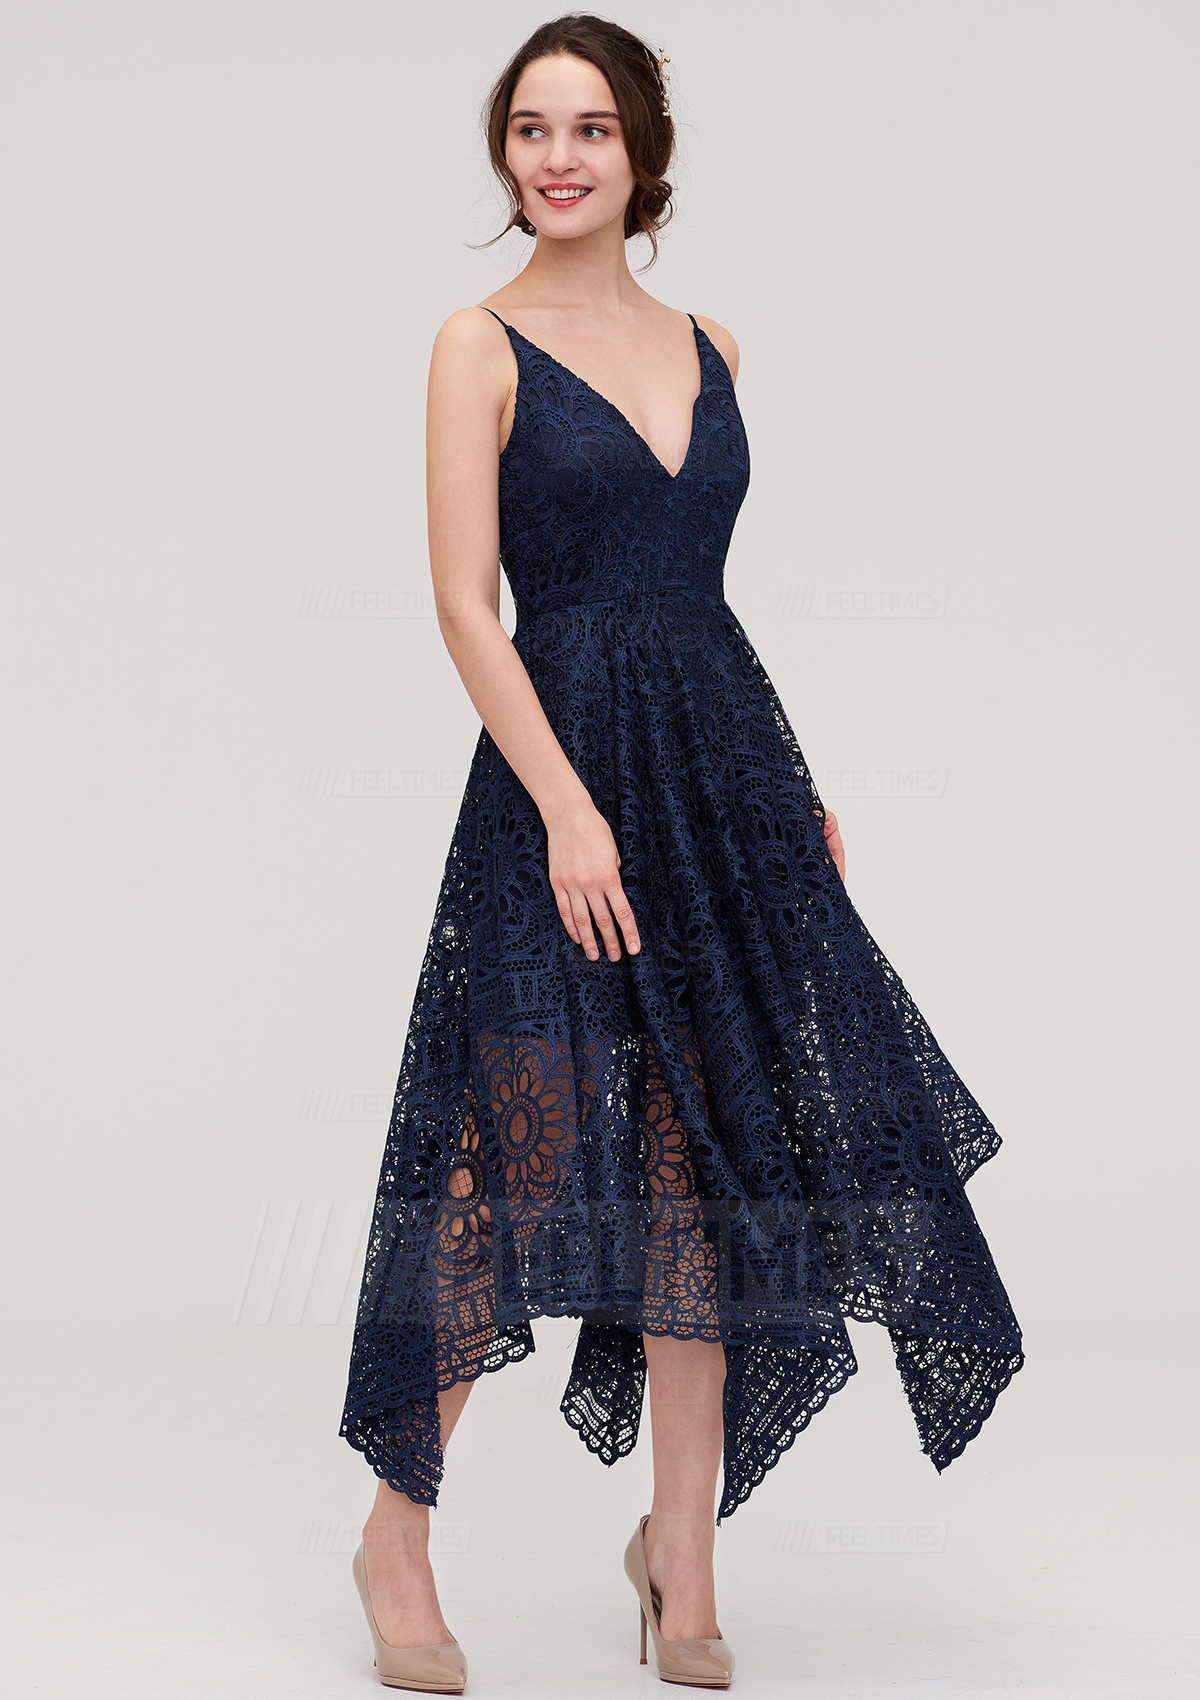 A-Line/Princess V Neck Sleeveless Tea-Length Lace Bridesmaid Dress
